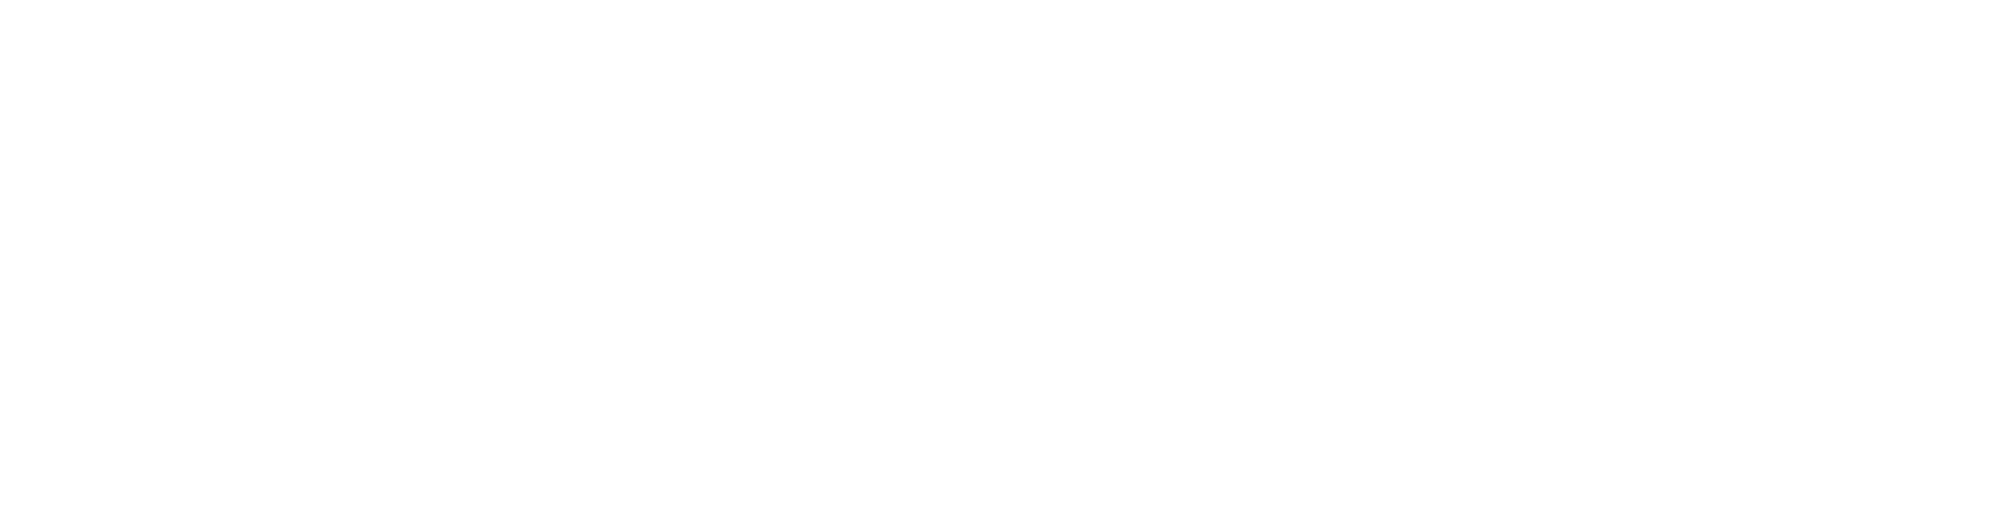 Afmelding - Logopediepraktijk Snakenborg